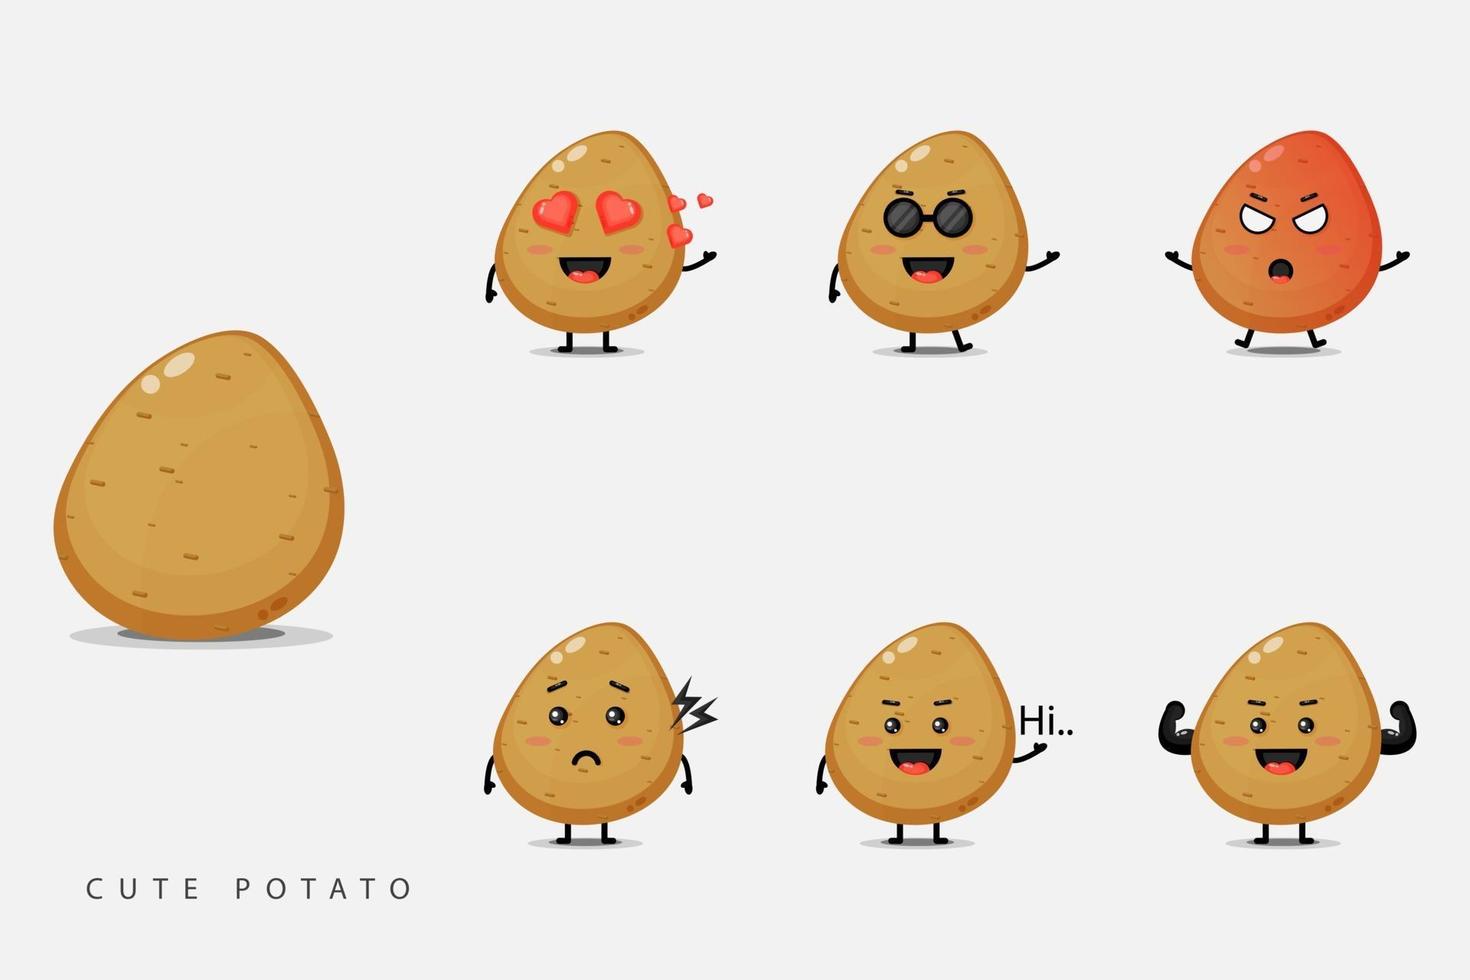 Cute potato vegetable mascot set vector